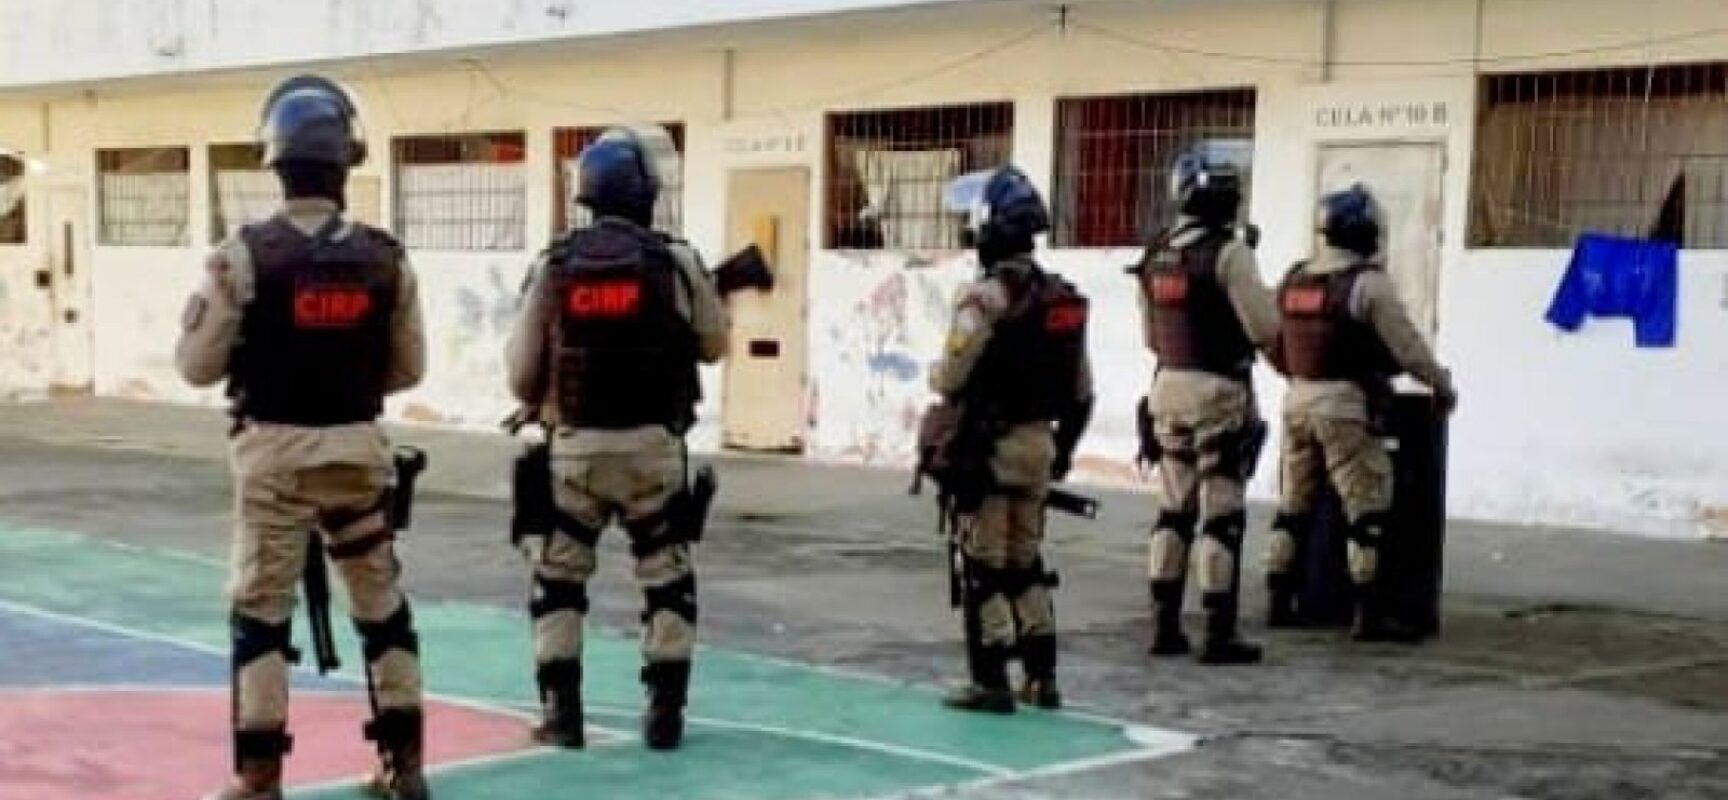 Polícia encontra 45 celulares e drogas durante revista em presídio de Simões Filho